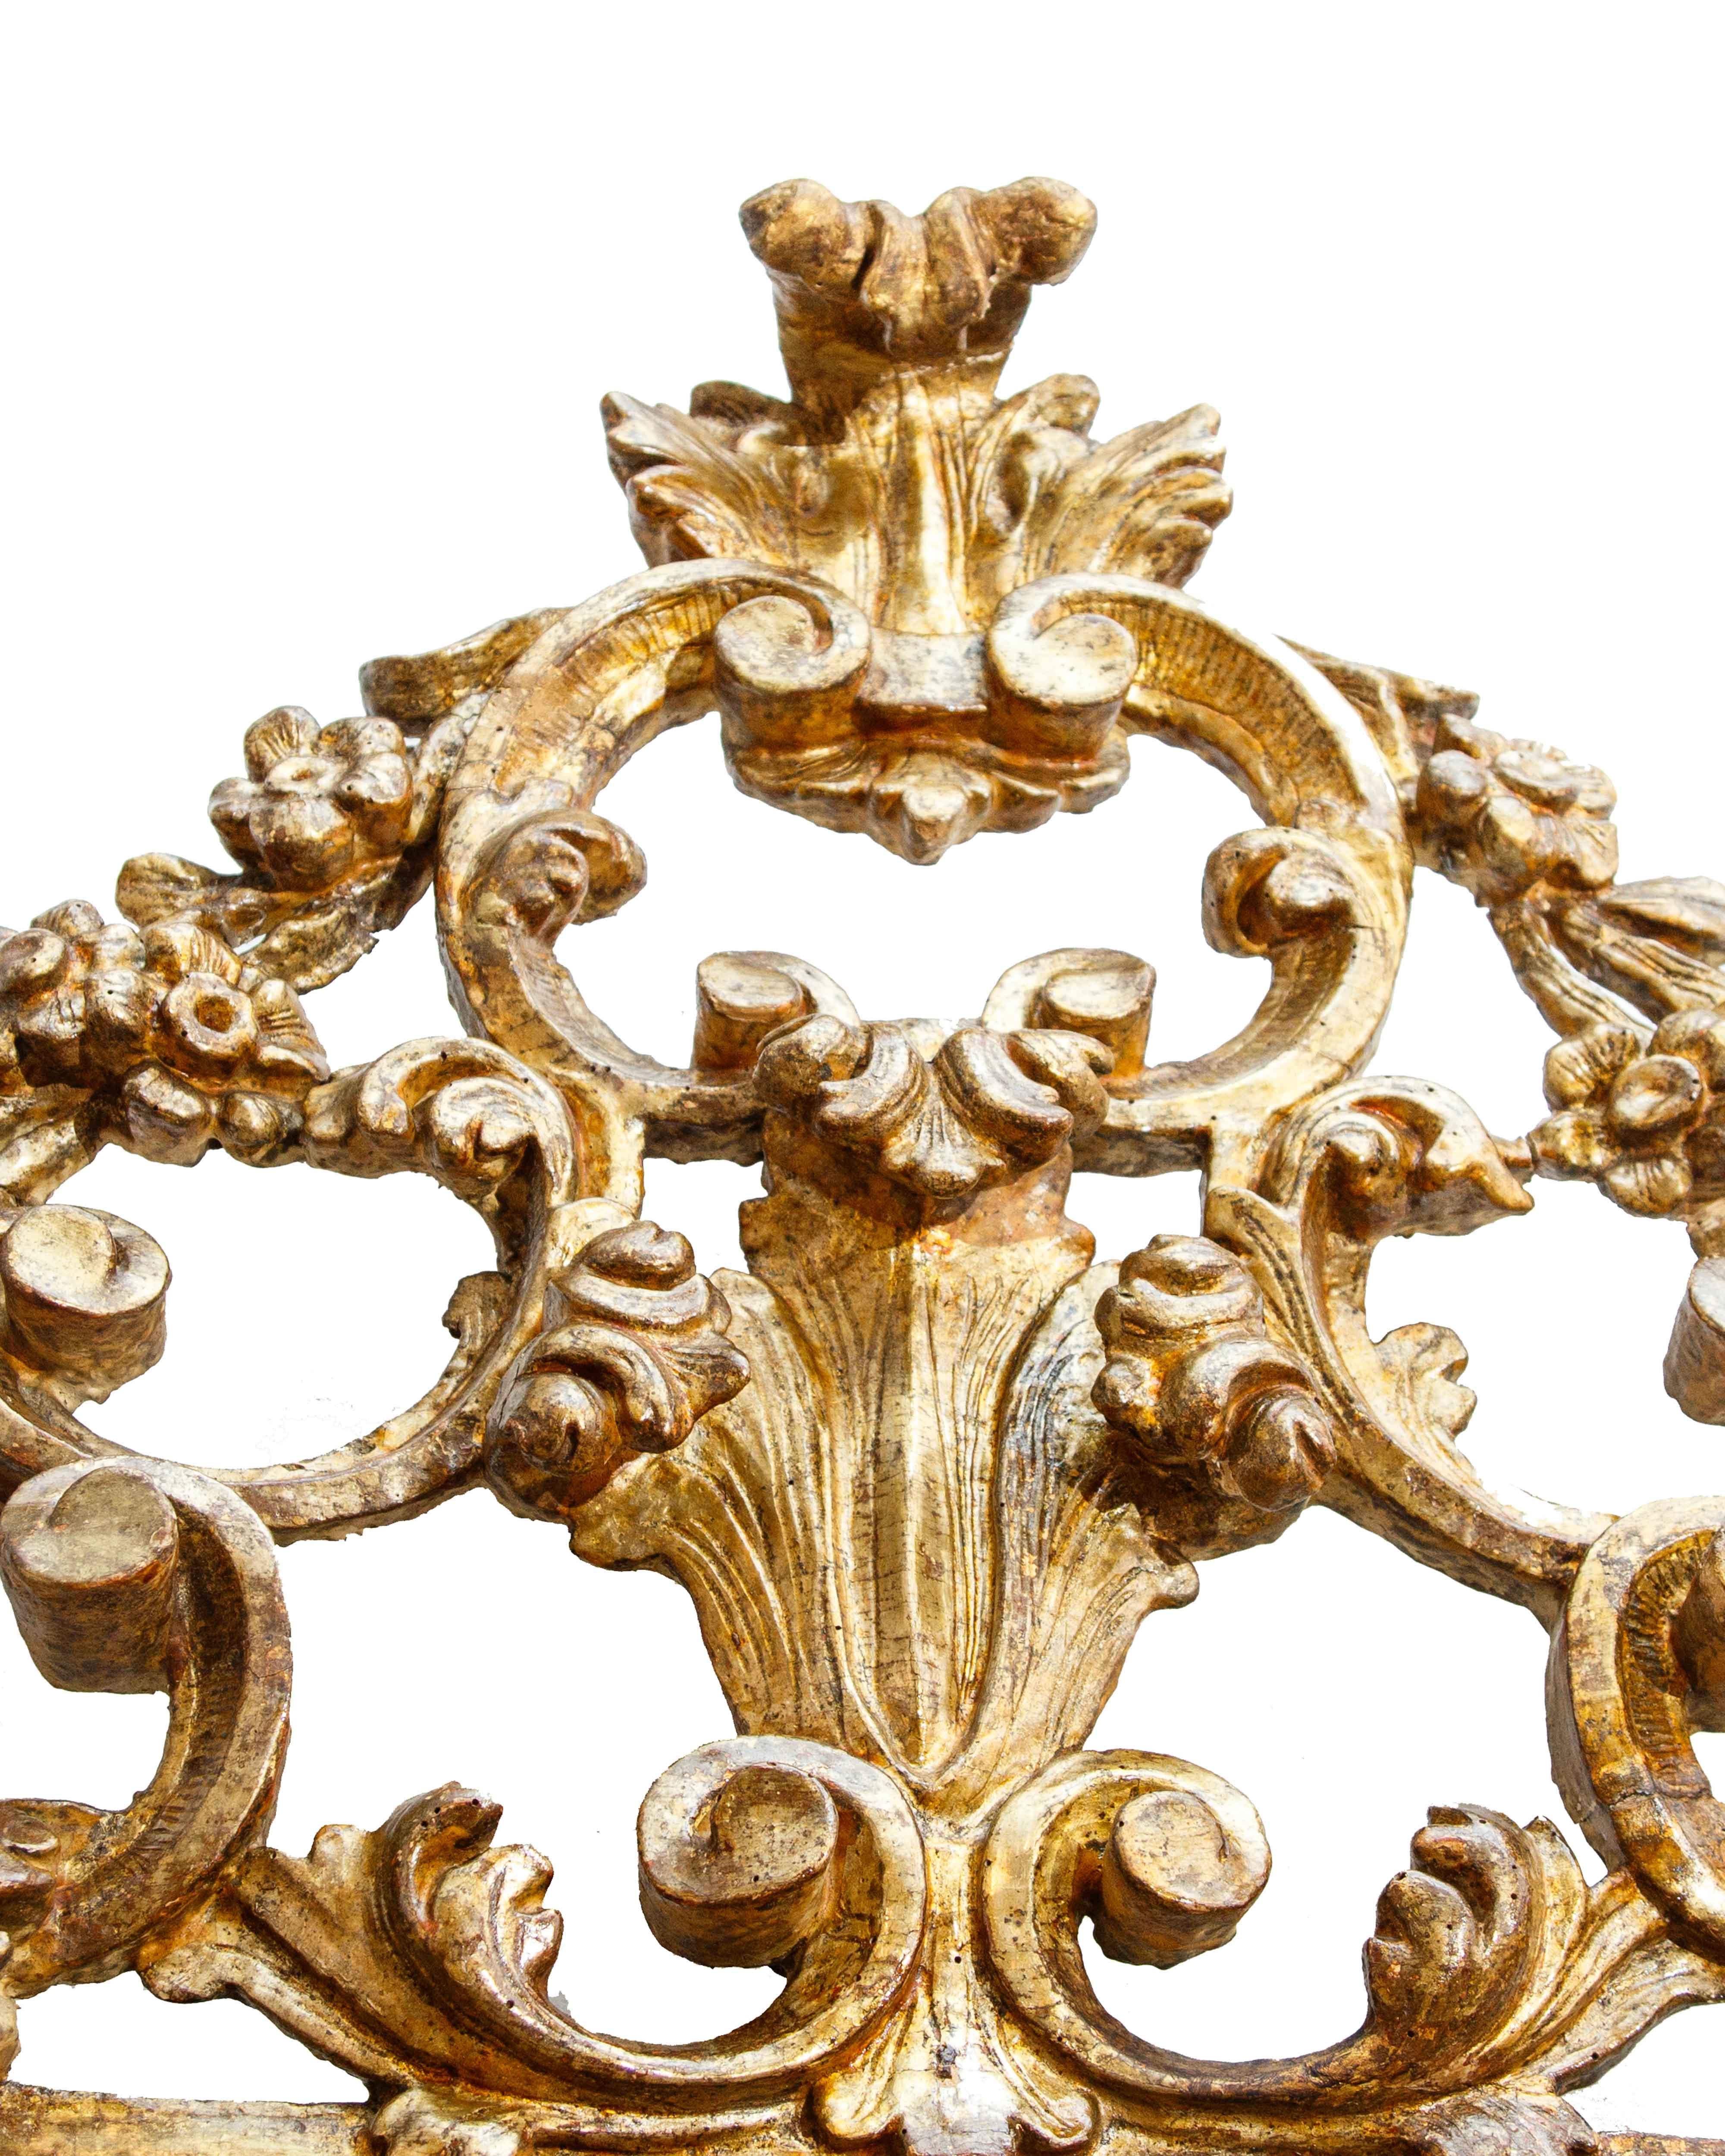 Piémont, Louis XVI

Miroir avec cimasa

Bois sculpté et doré, 164 x 104 cm

Léger, 90 x 70 cm

Le miroir Louis XVI examiné, manifestement fabriqué dans le Piémont, est en bois sculpté et doré et possède une cimaise ajourée décorée de frises de